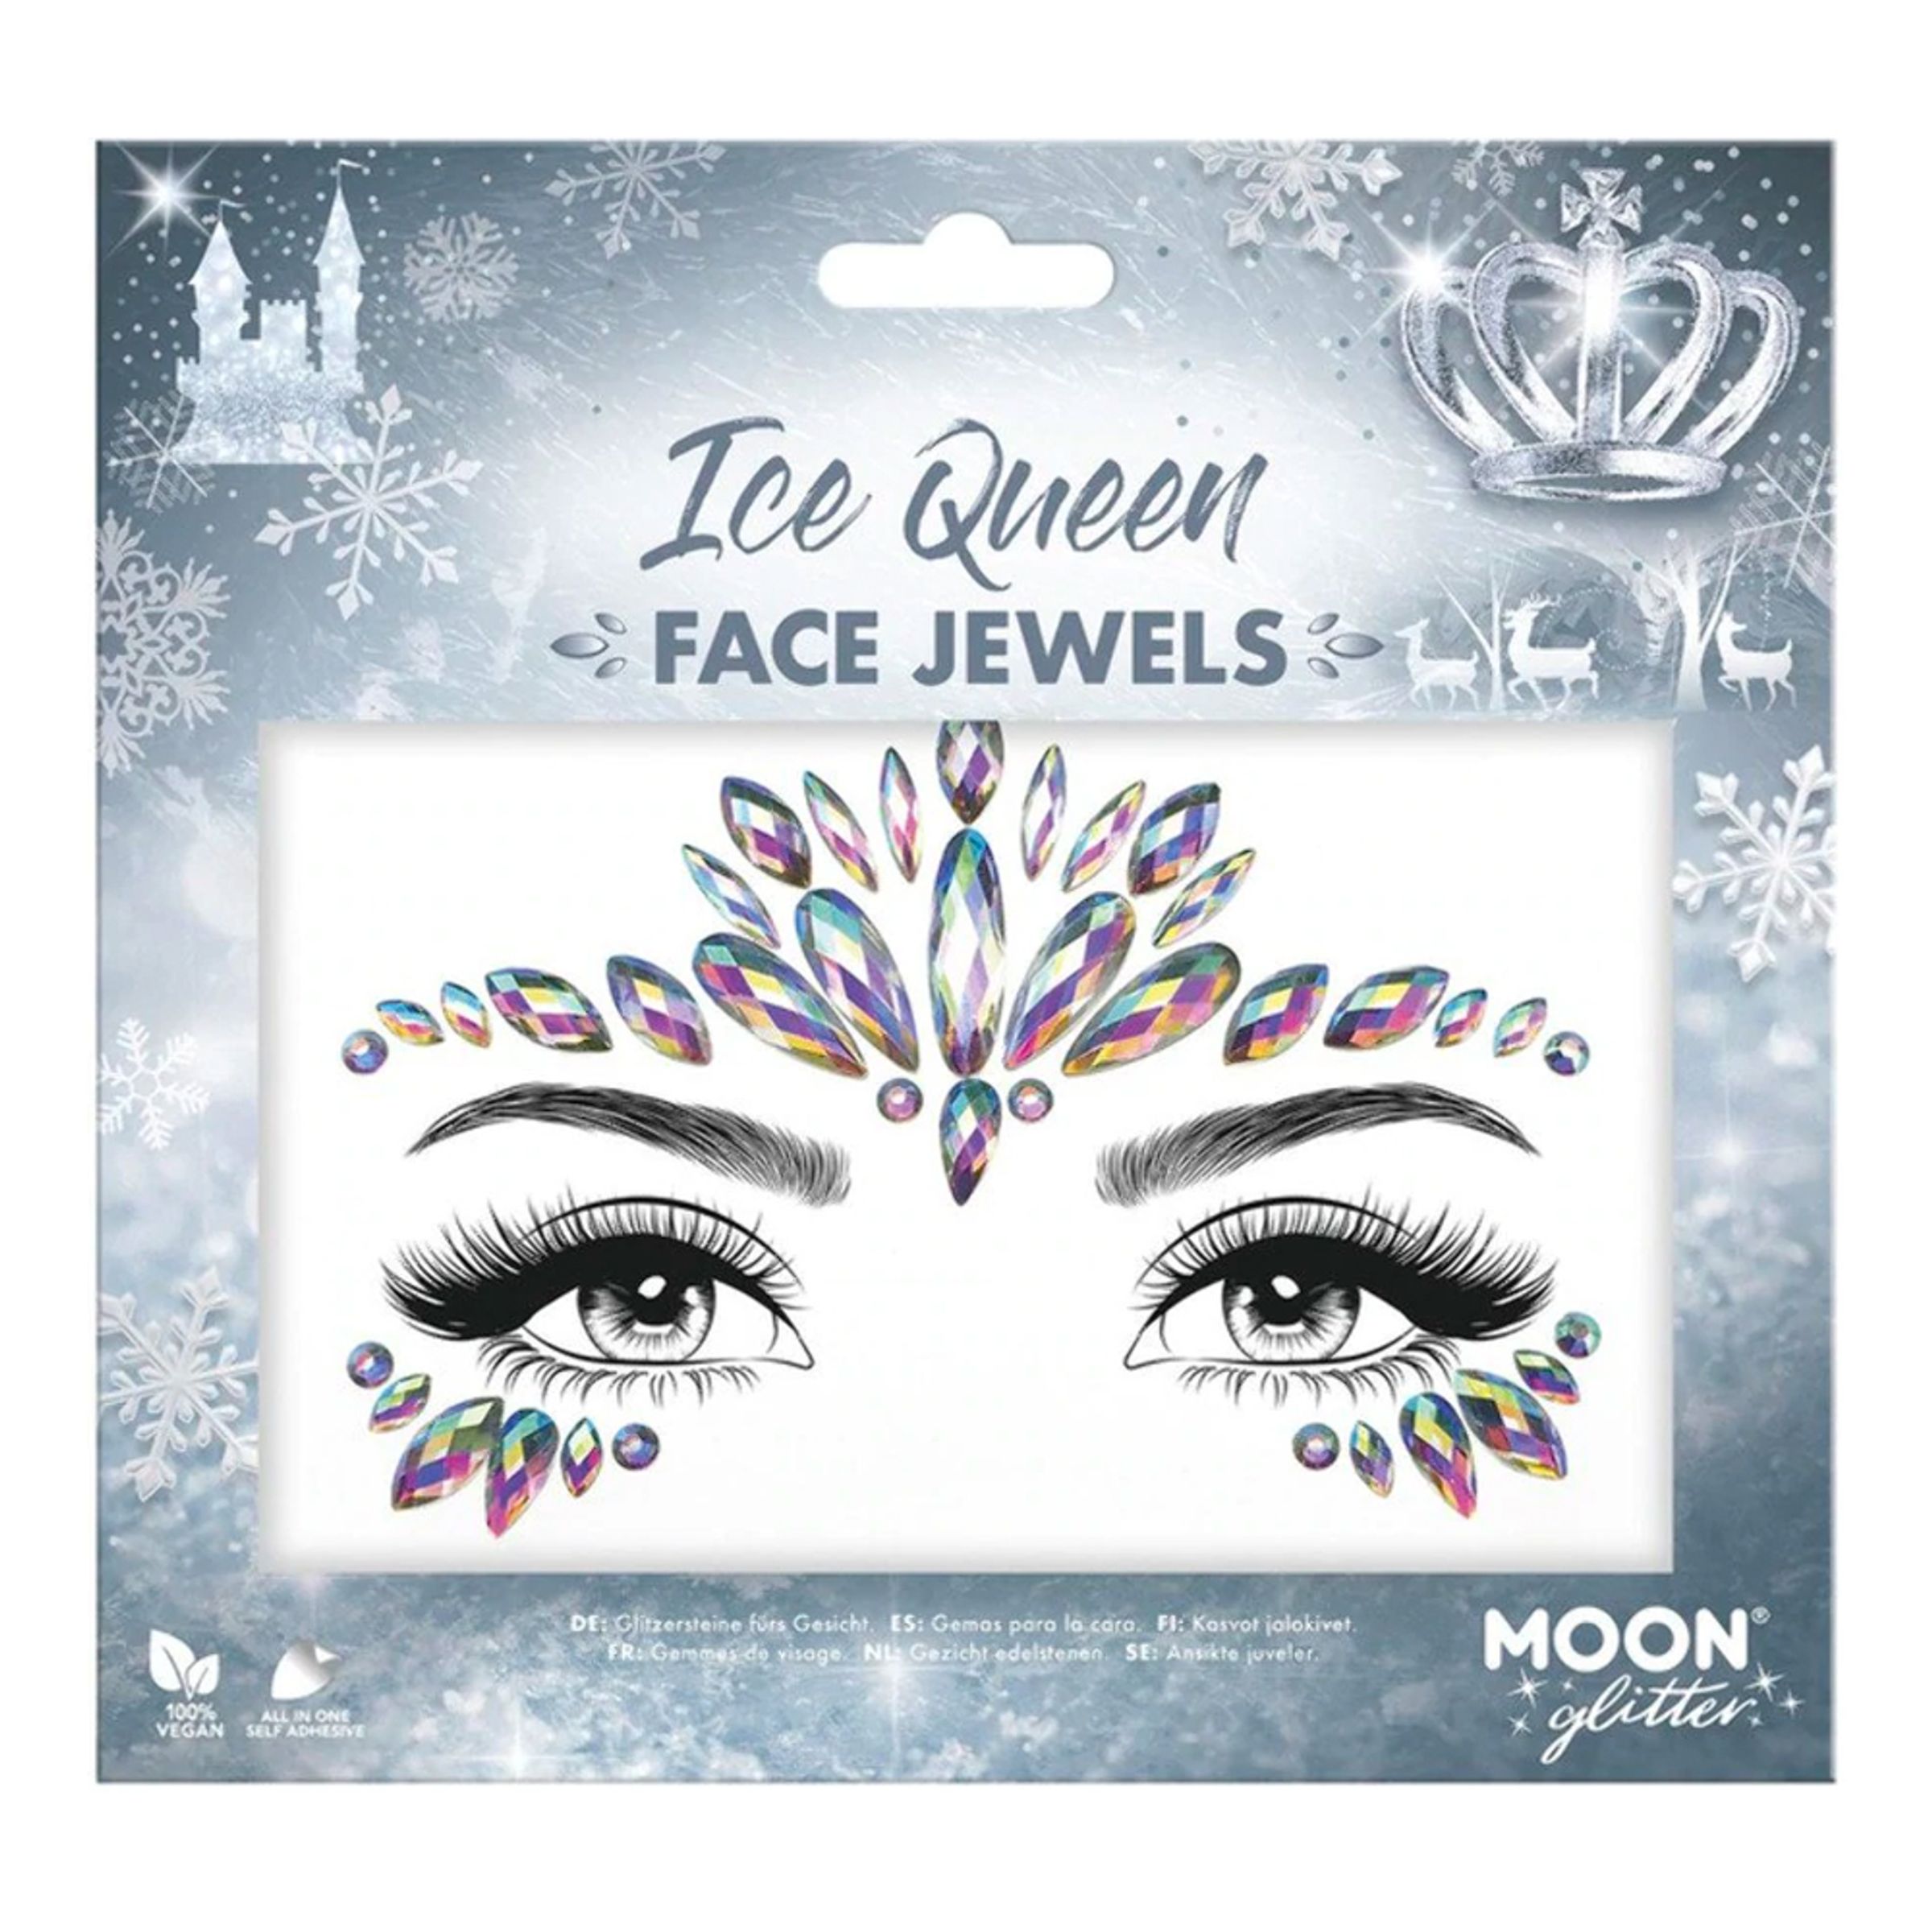 Läs mer om Face Jewels Ice Queen